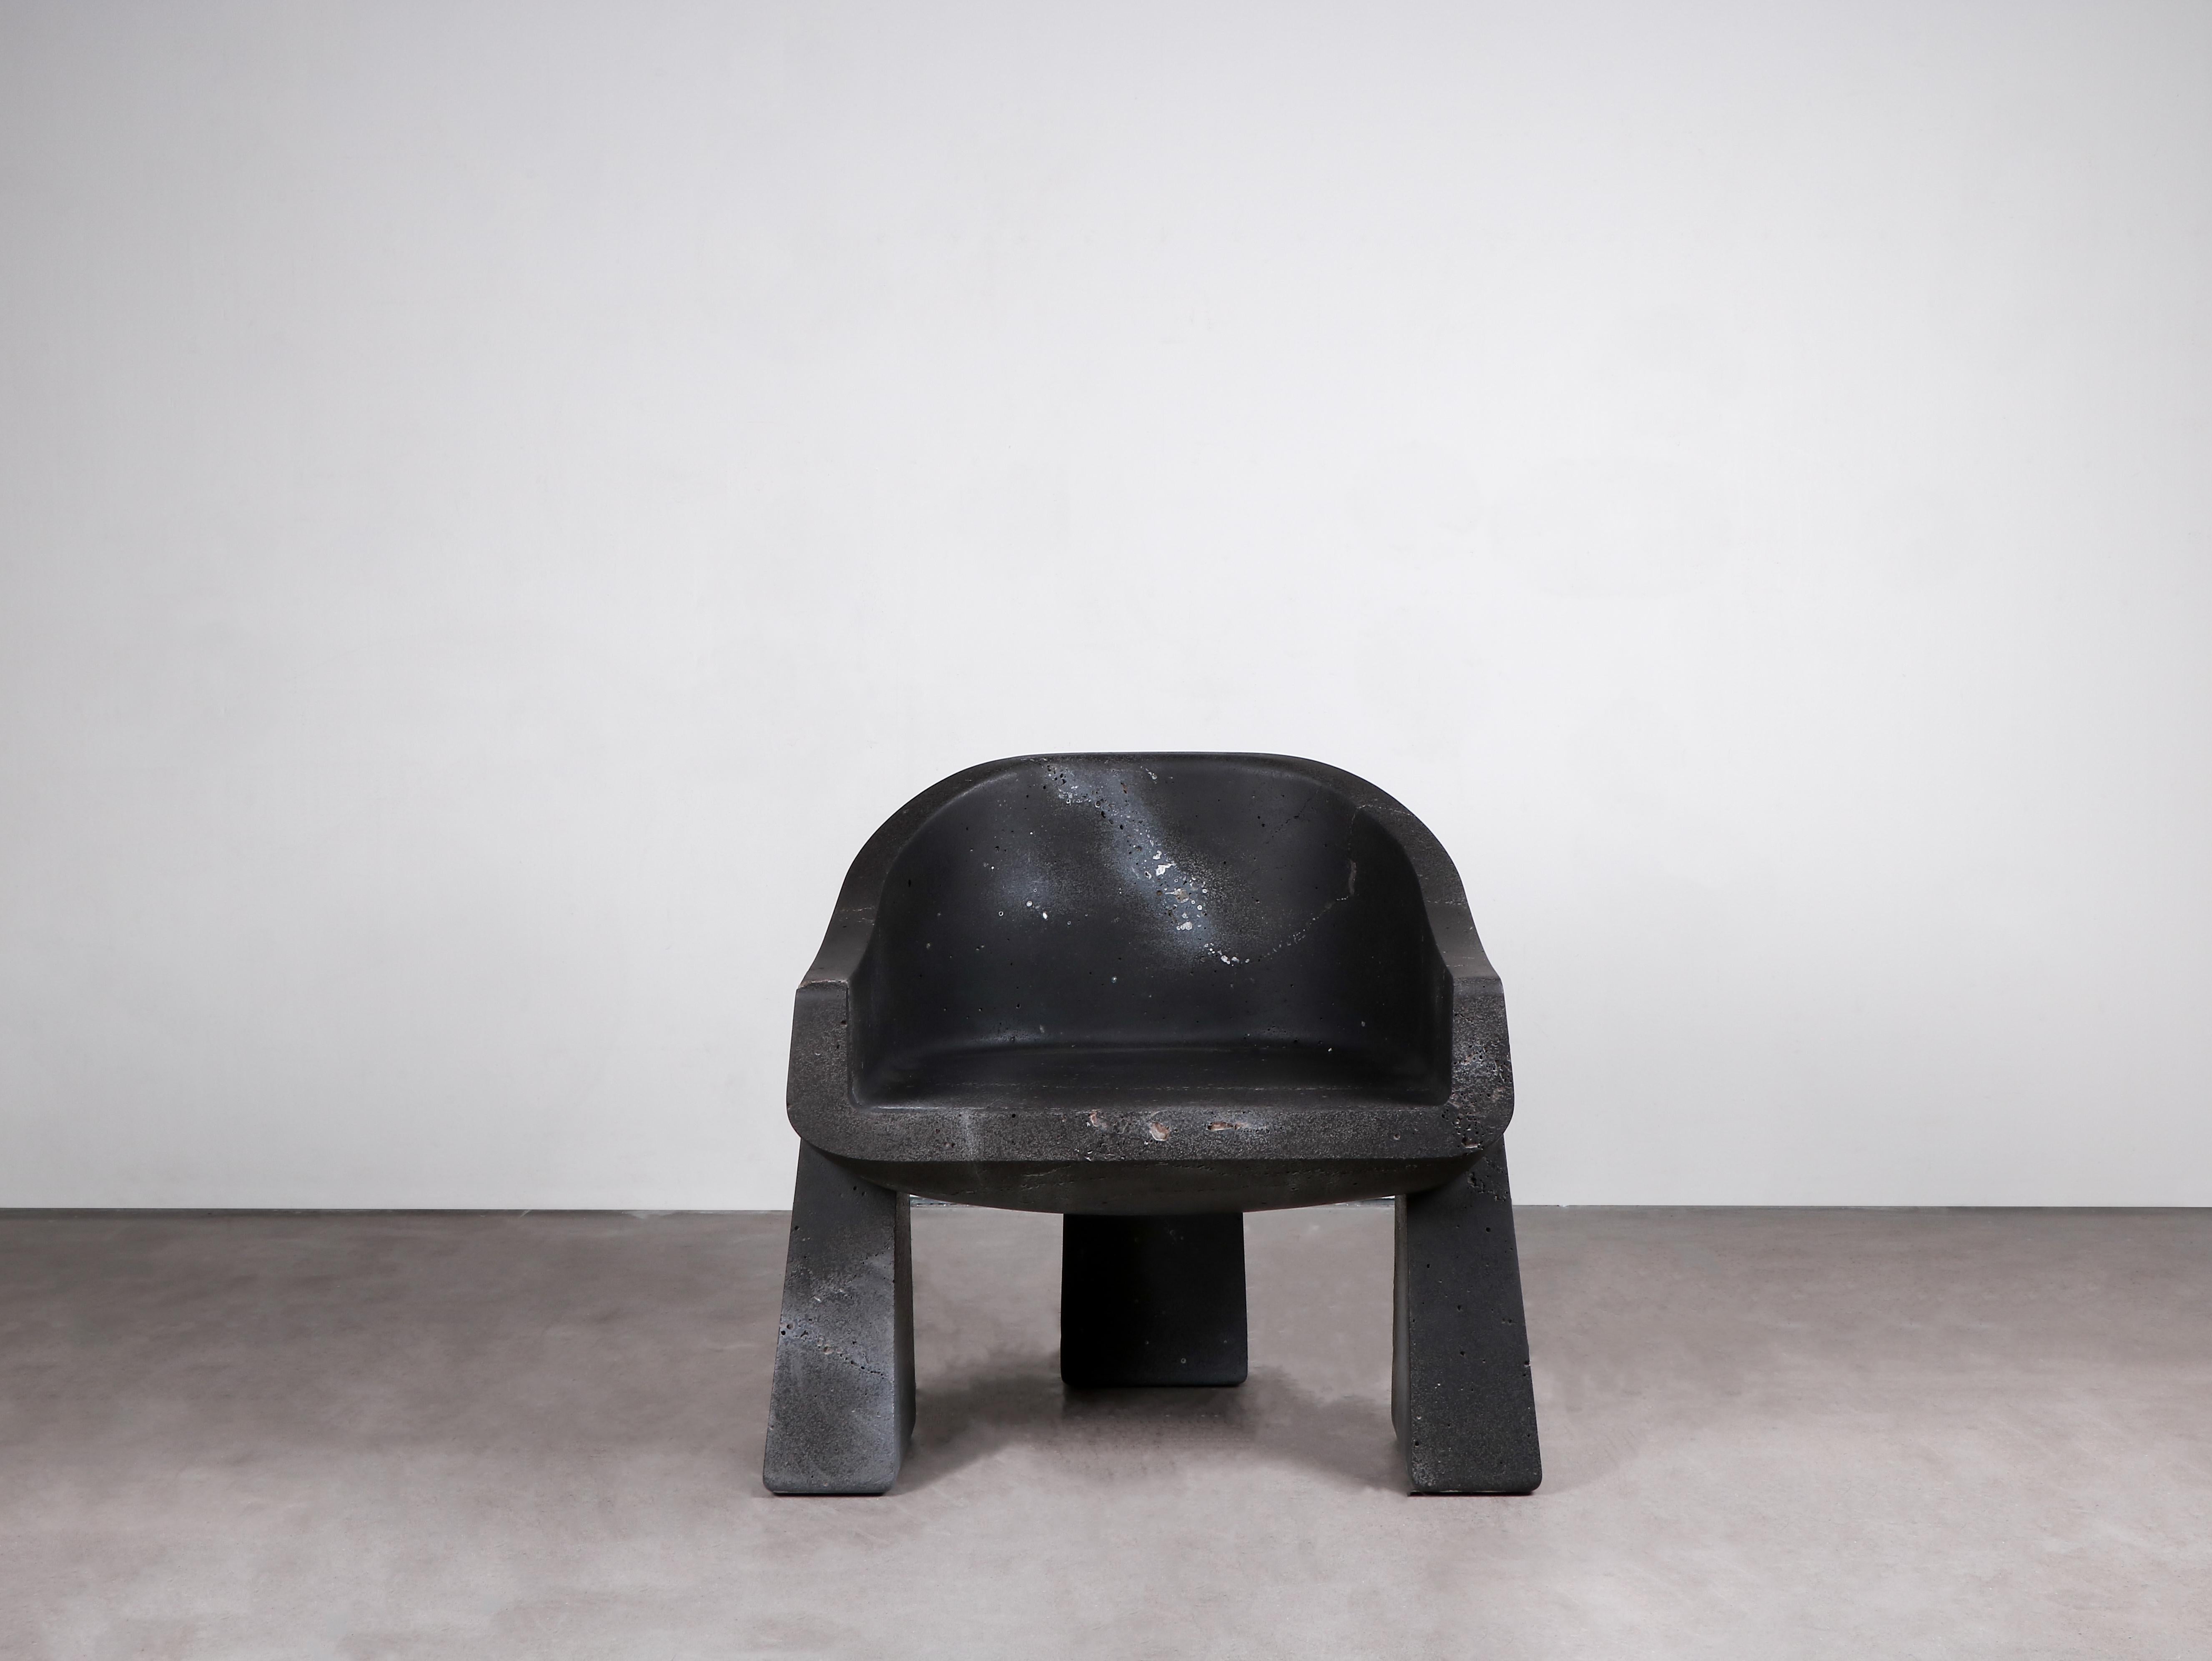 Modern Contemporary Black Armchair in Basalt, Klot Basalt Chair by Lucas Morten